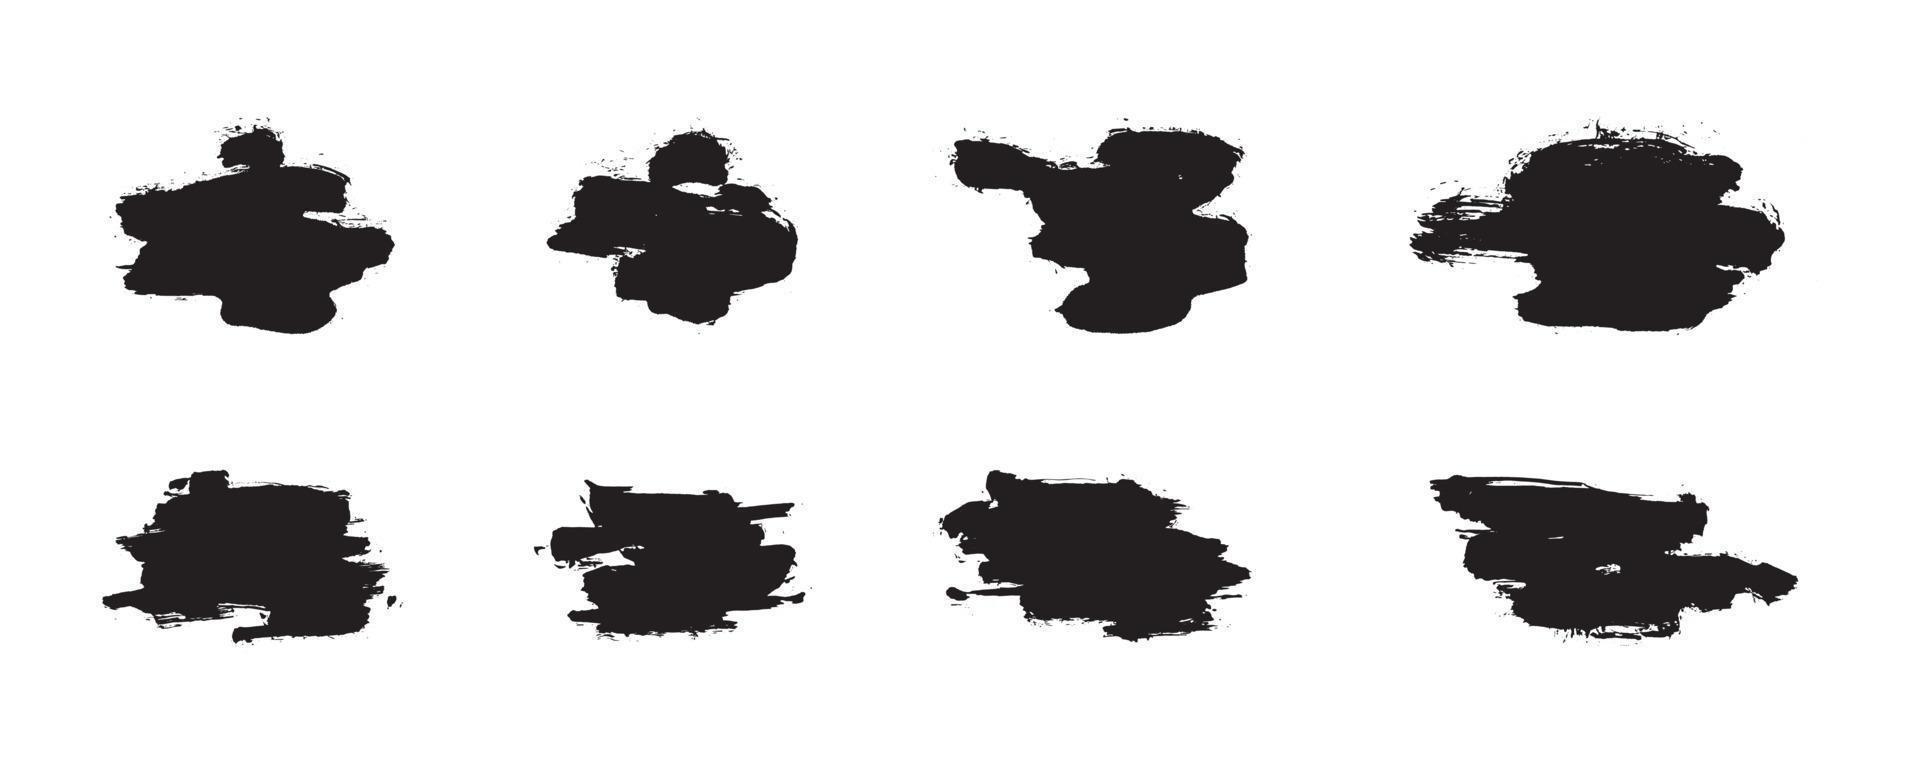 pinceladas abstratas de estilo chinês. conjunto de traços de tinta preta em papel branco. elementos de design gráfico para espaço de cópia, terço inferior, efeito de texto, pincel vetorial, etc. vetor